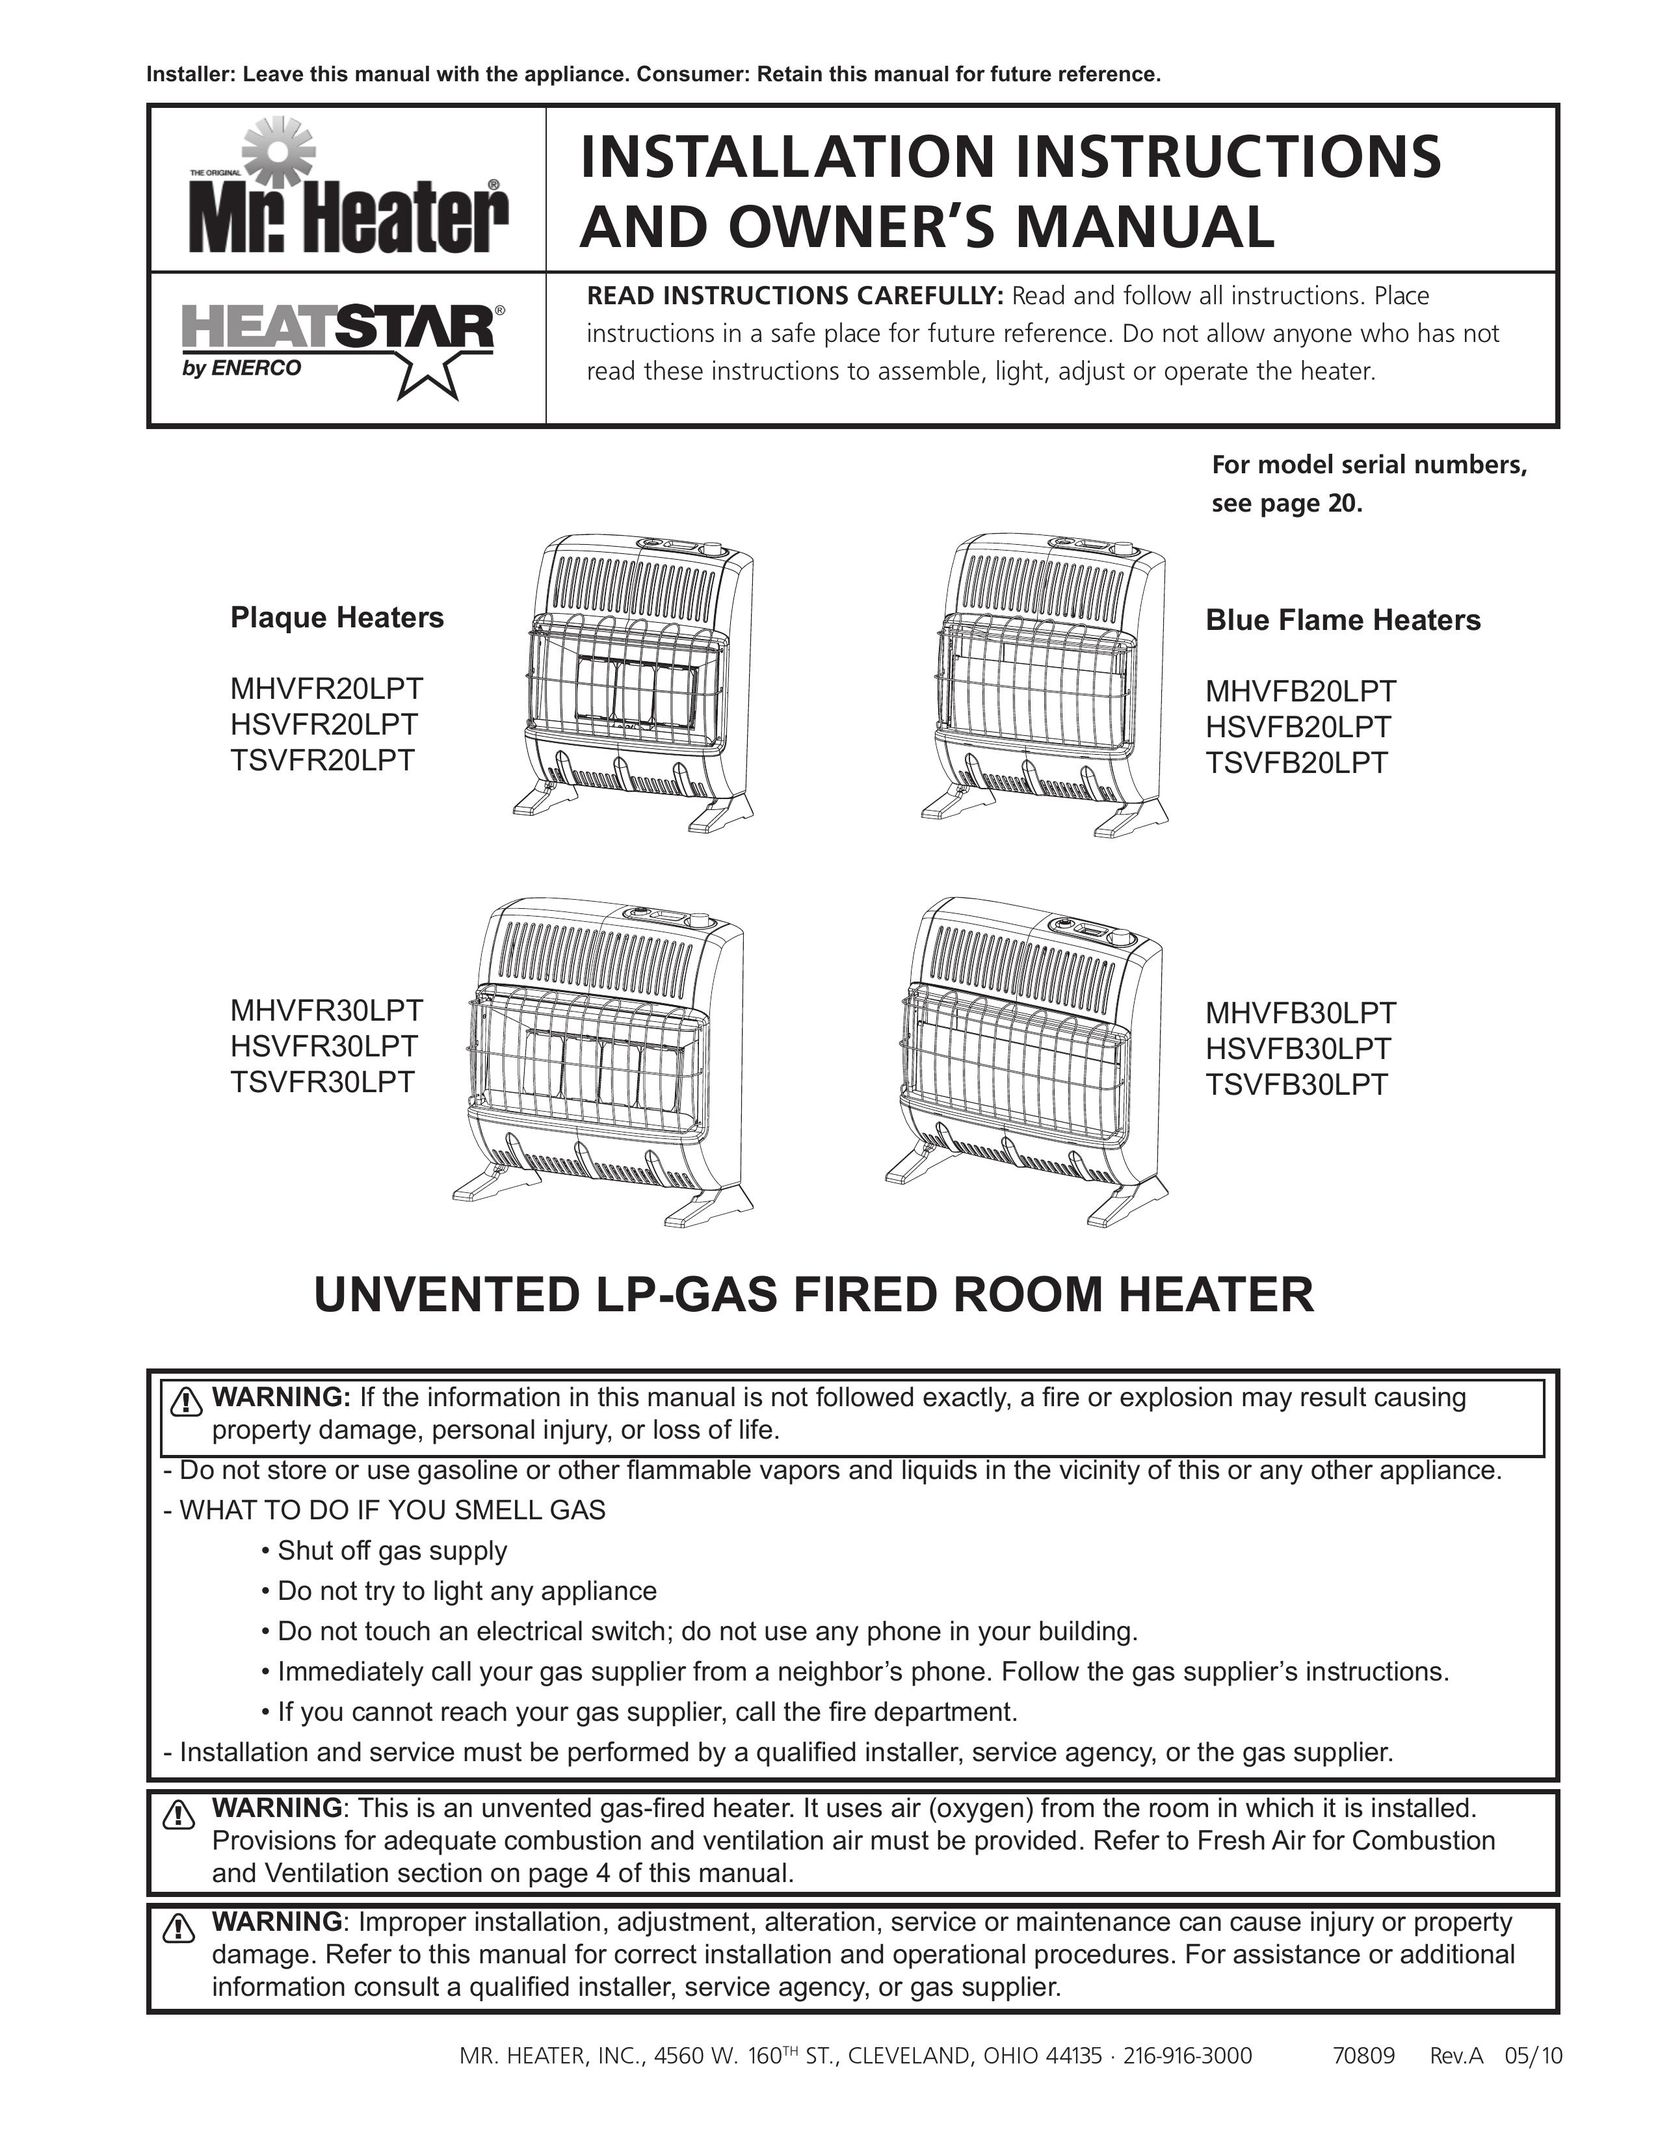 Enerco TSVFR20LPT Gas Heater User Manual